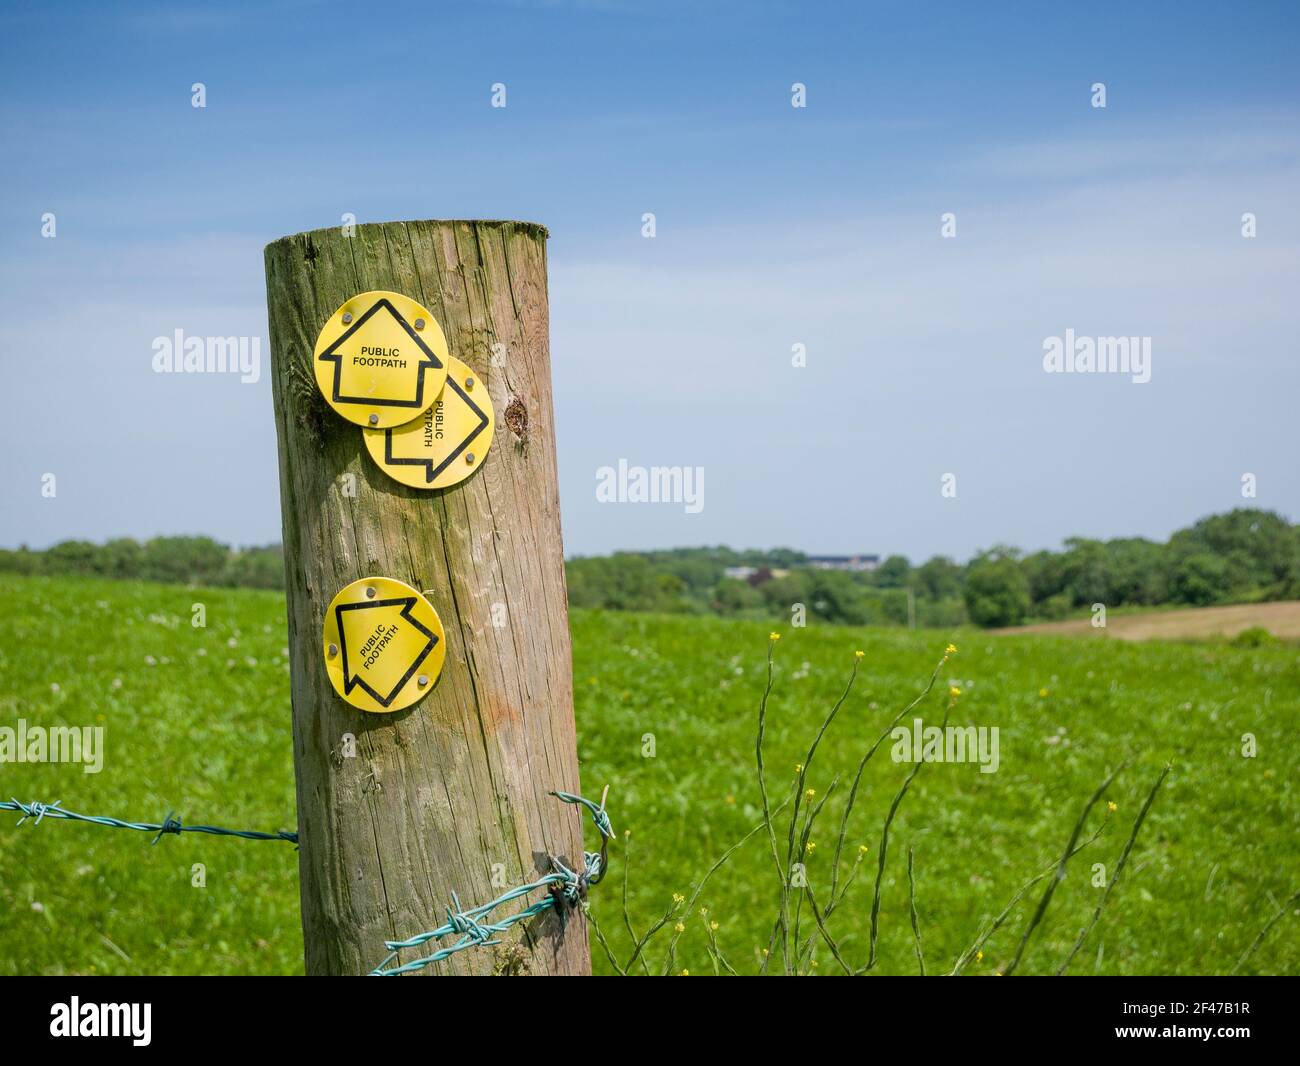 Un fincepad in legno con le indicazioni del sentiero pubblico vi inchiodò nella campagna inglese. Foto Stock